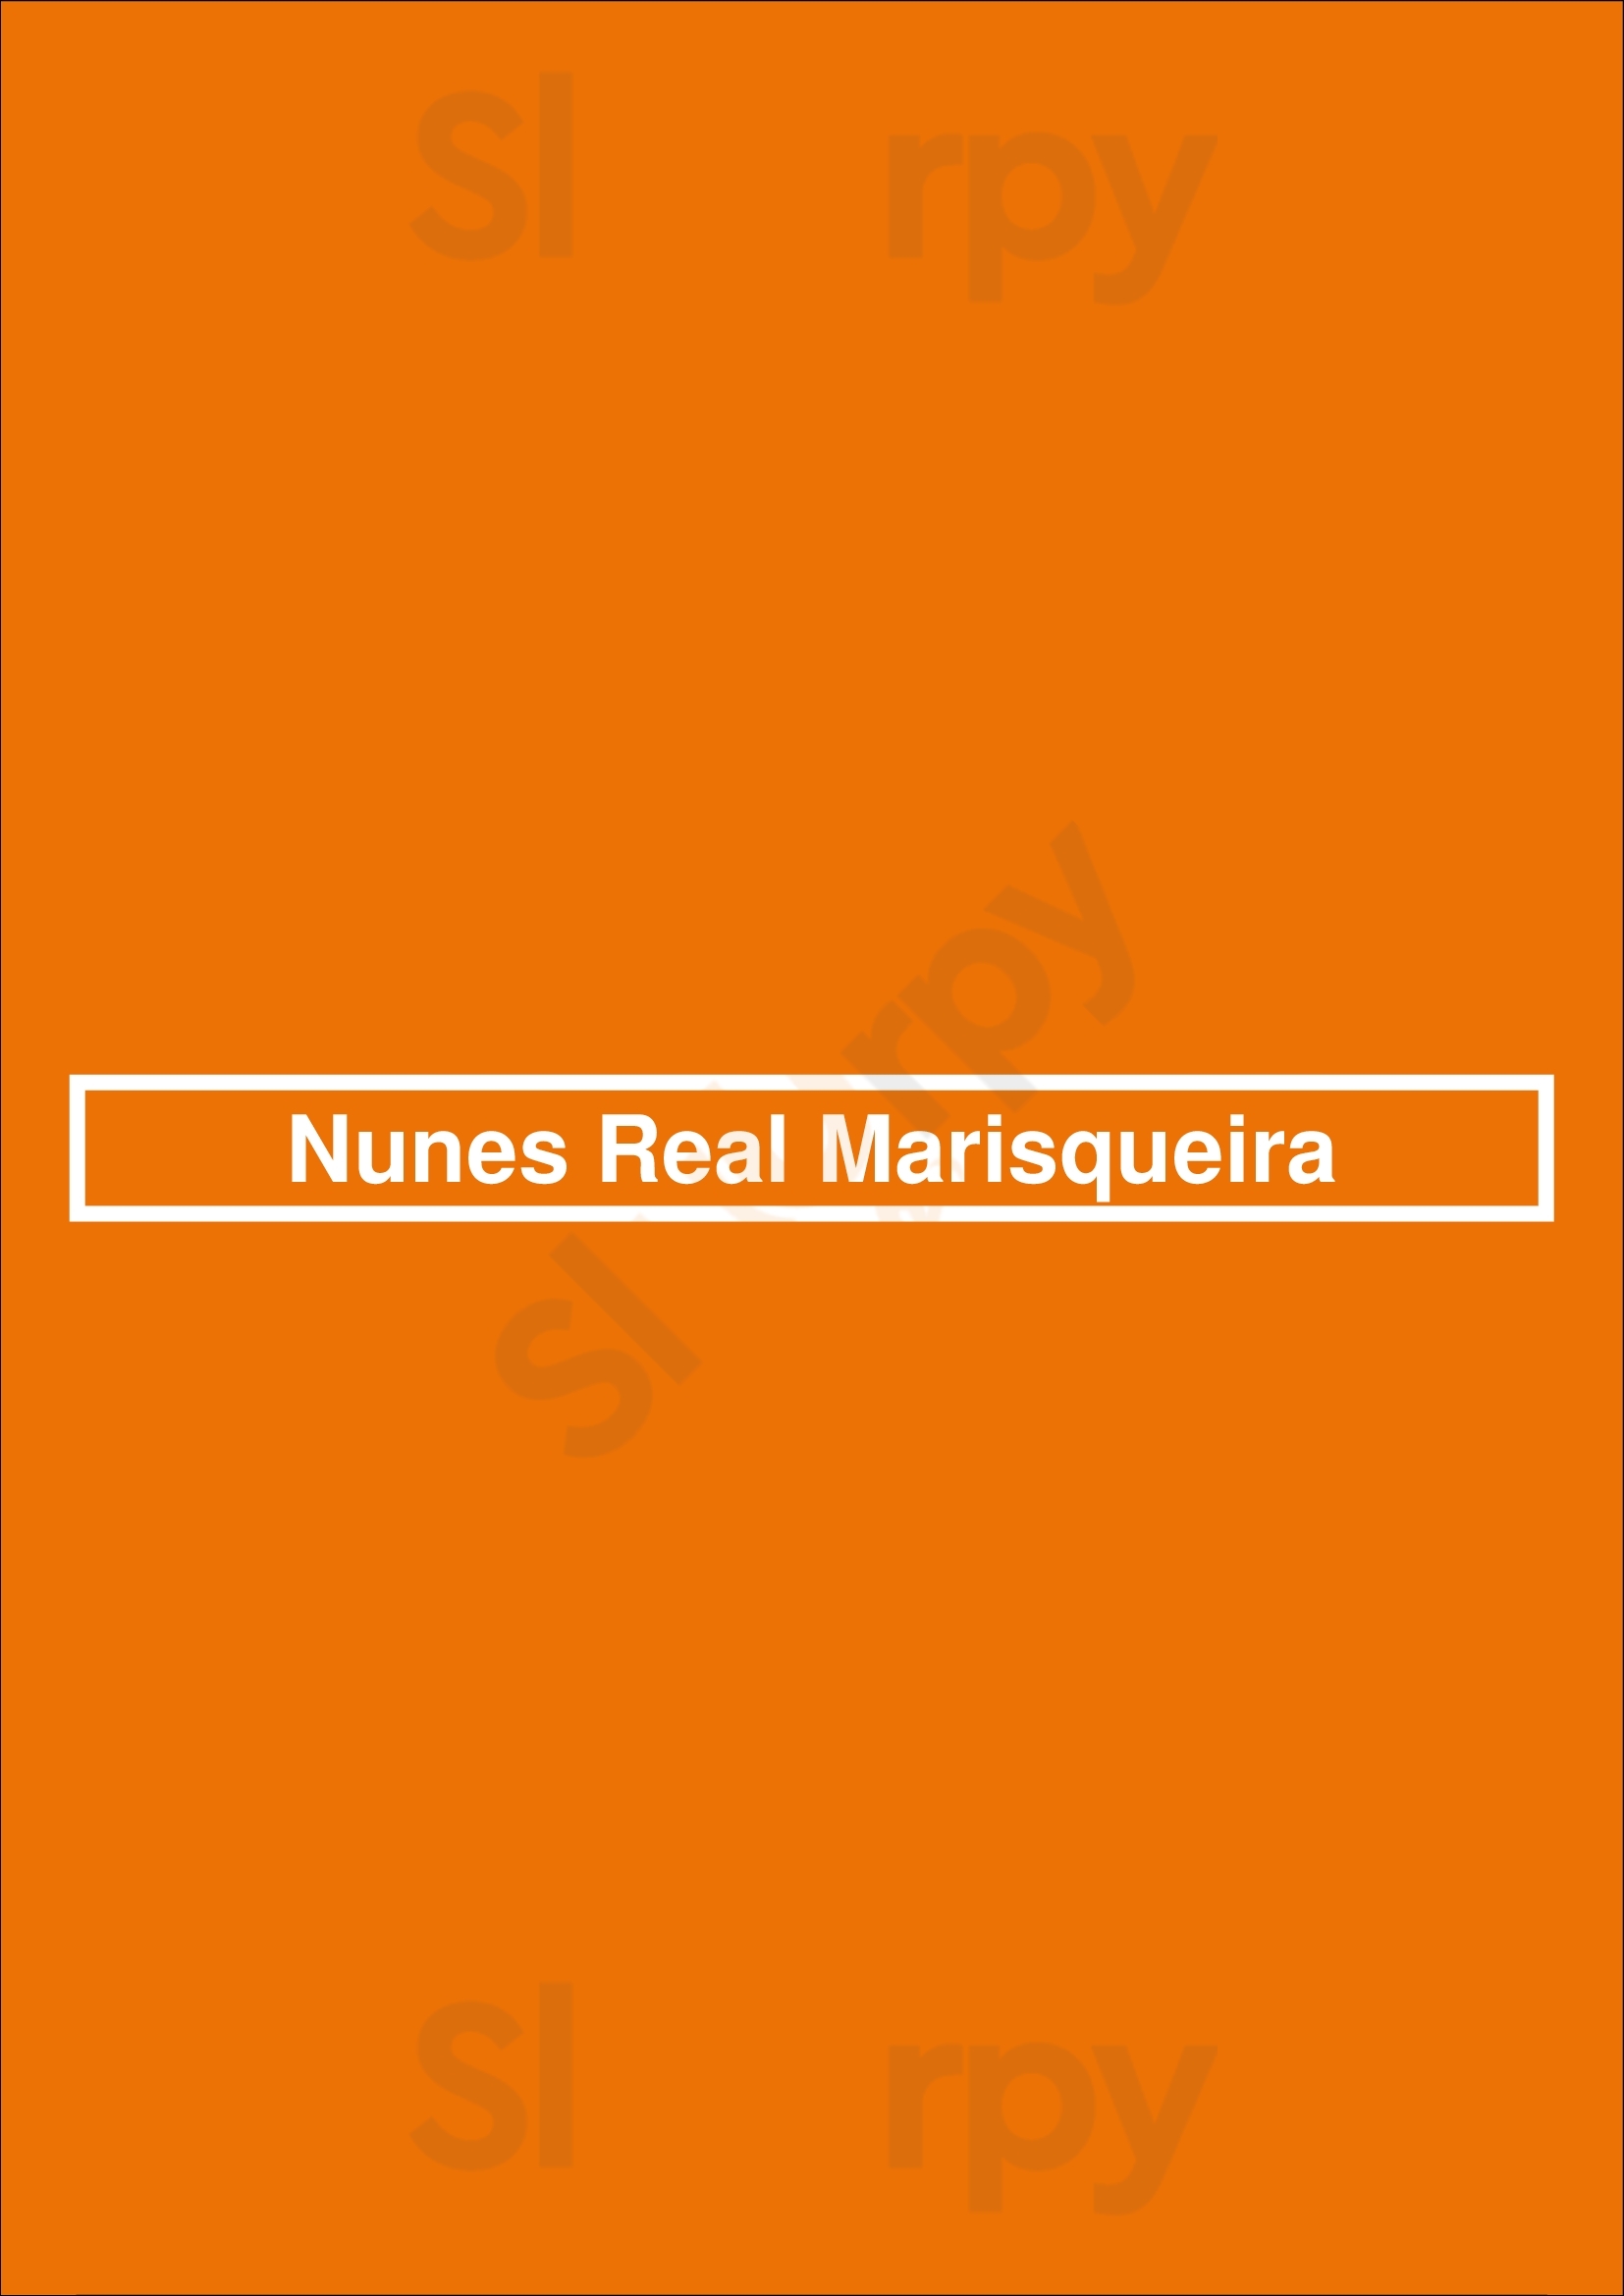 Nunes Real Marisqueira Lisboa Menu - 1